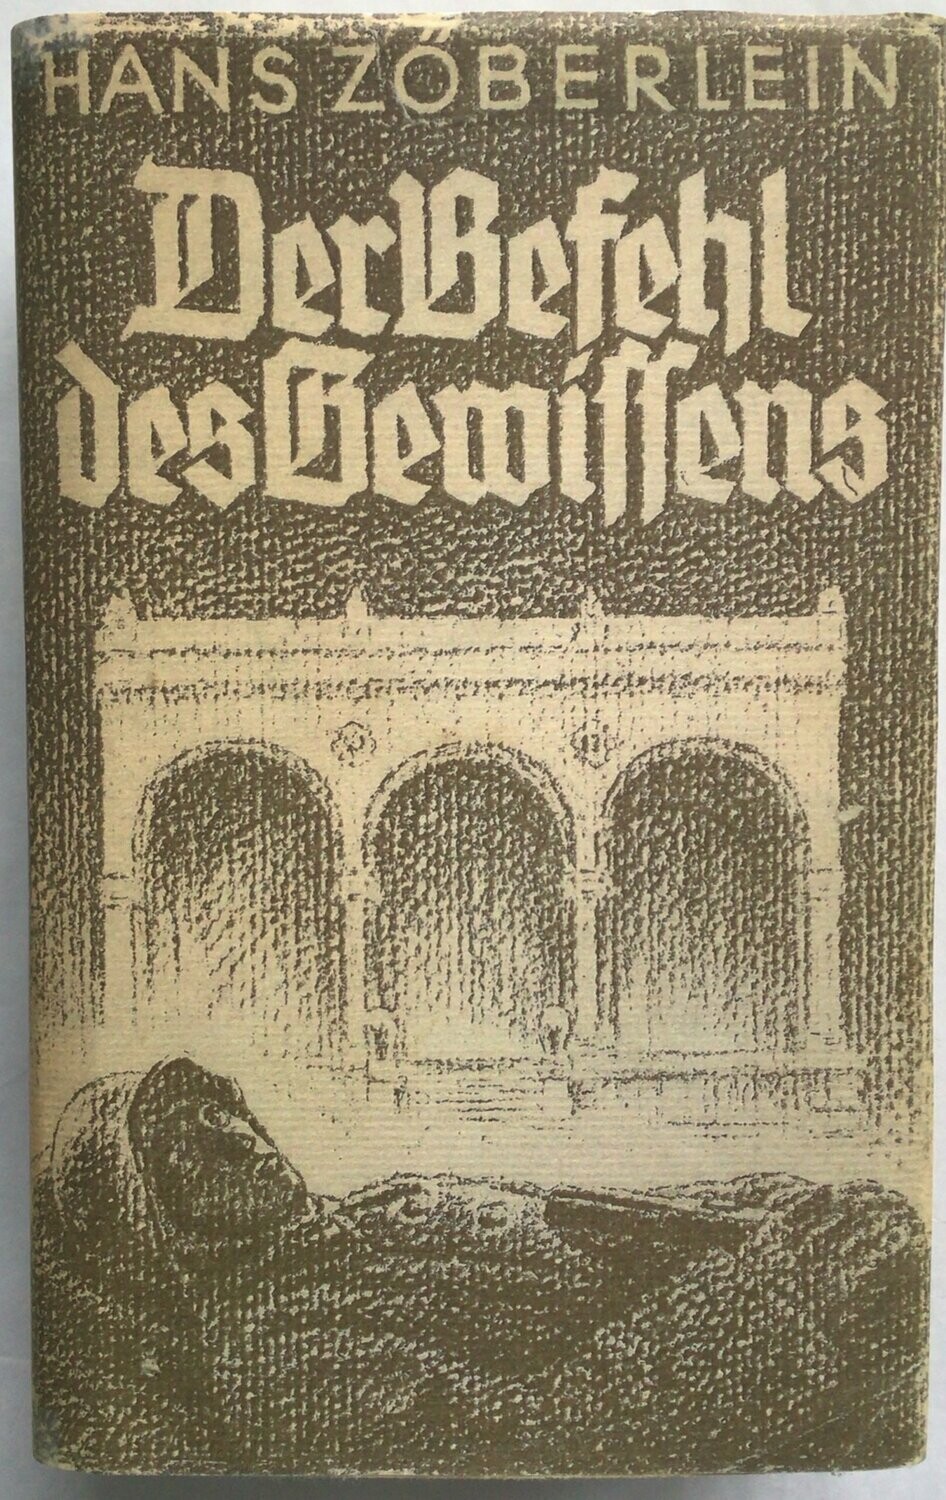 Zöberlein: Der Befehl des Gewissens - 21. Auflage aus dem Jahr 1943 mit Schutzumschlag (Kopie)